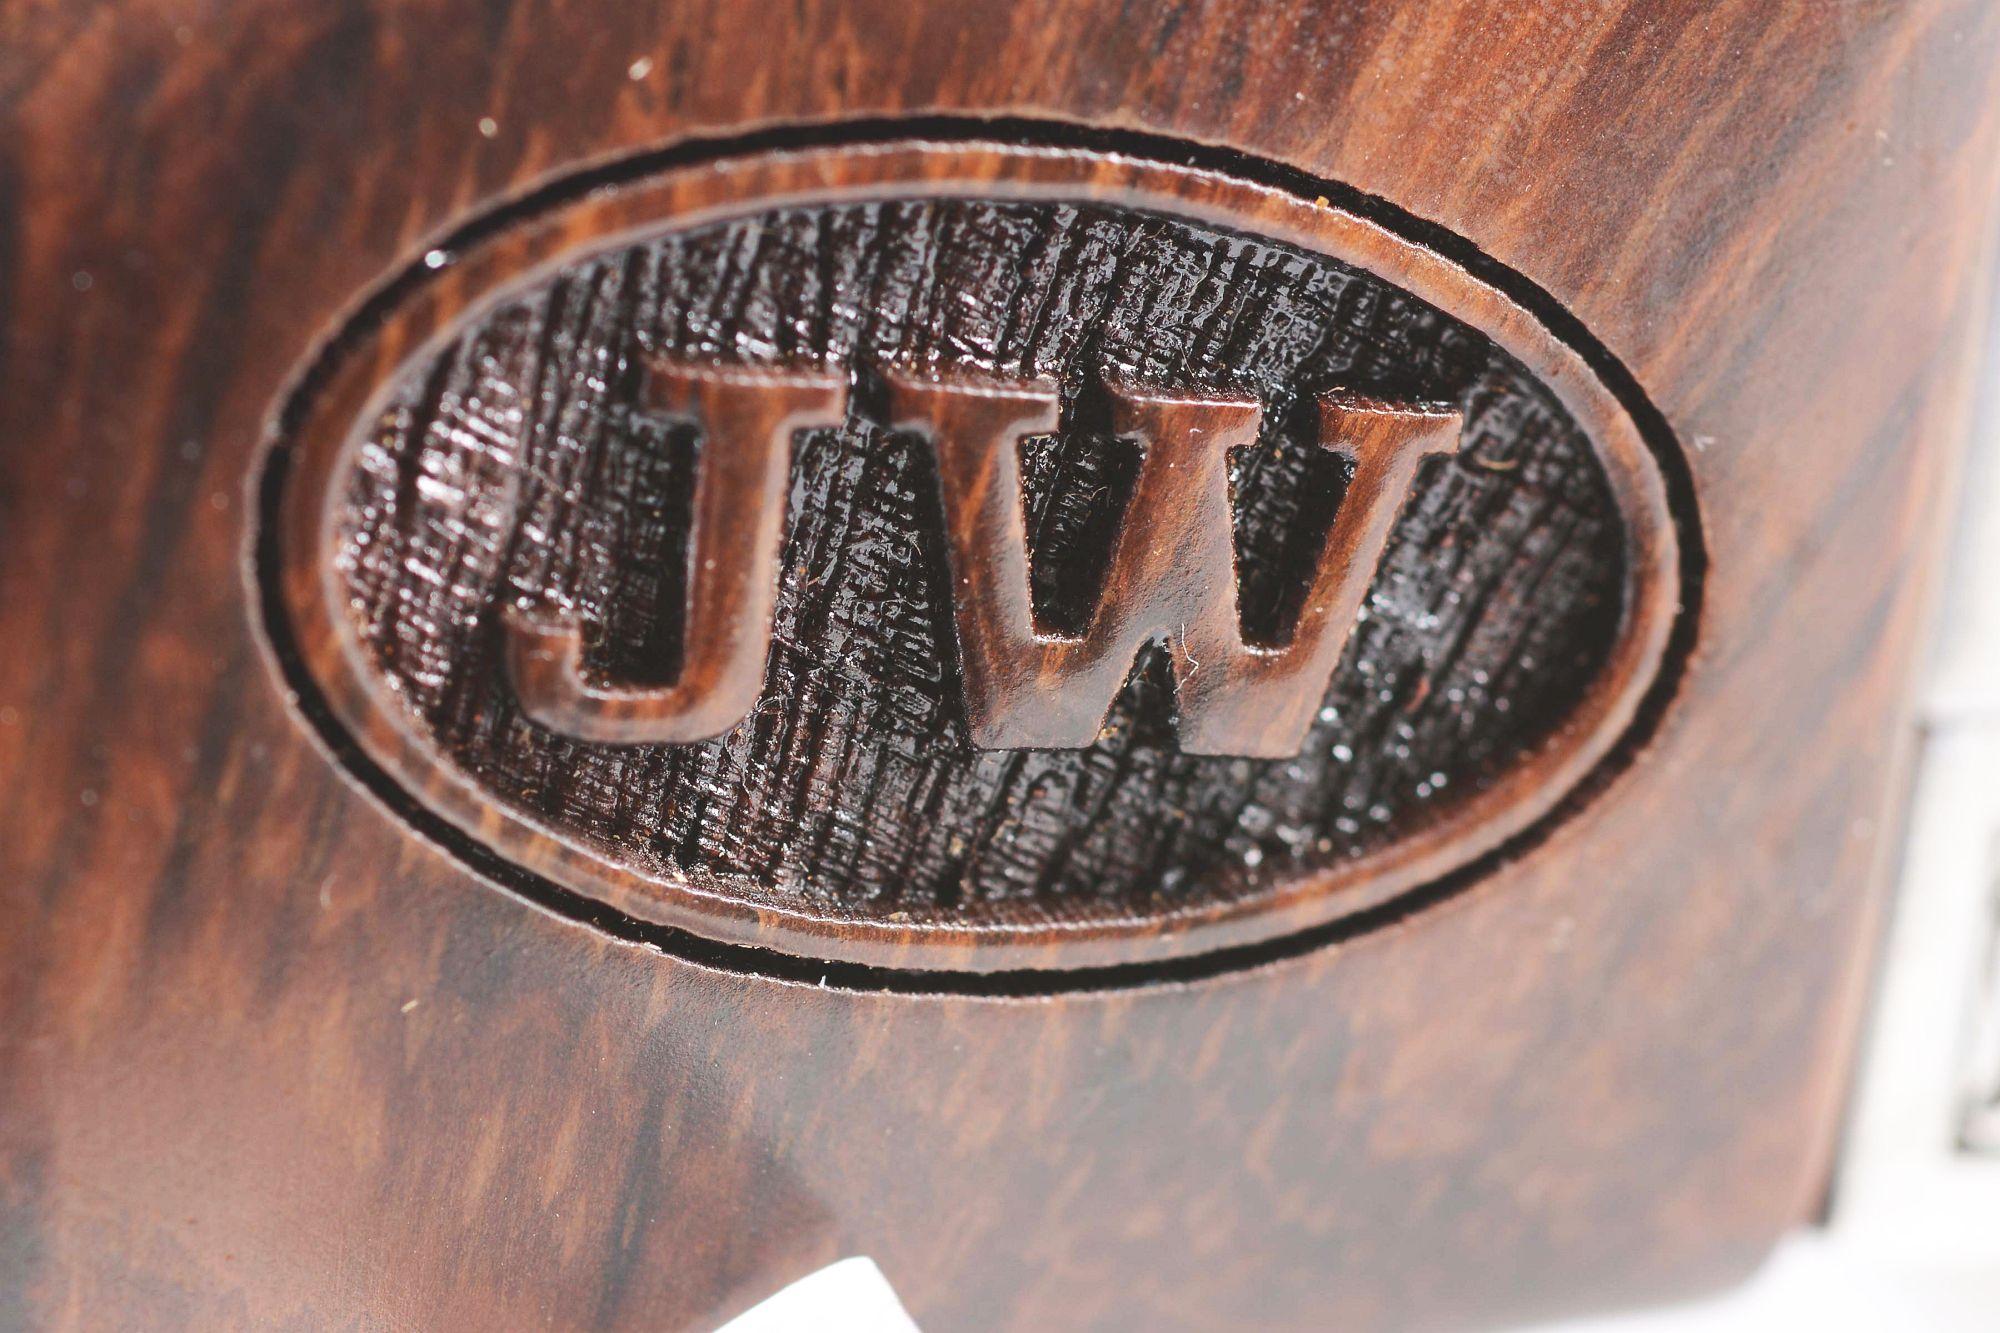 (M) NIB John Wayne Commemorative Ruger Vaquero Single Action Revolver.